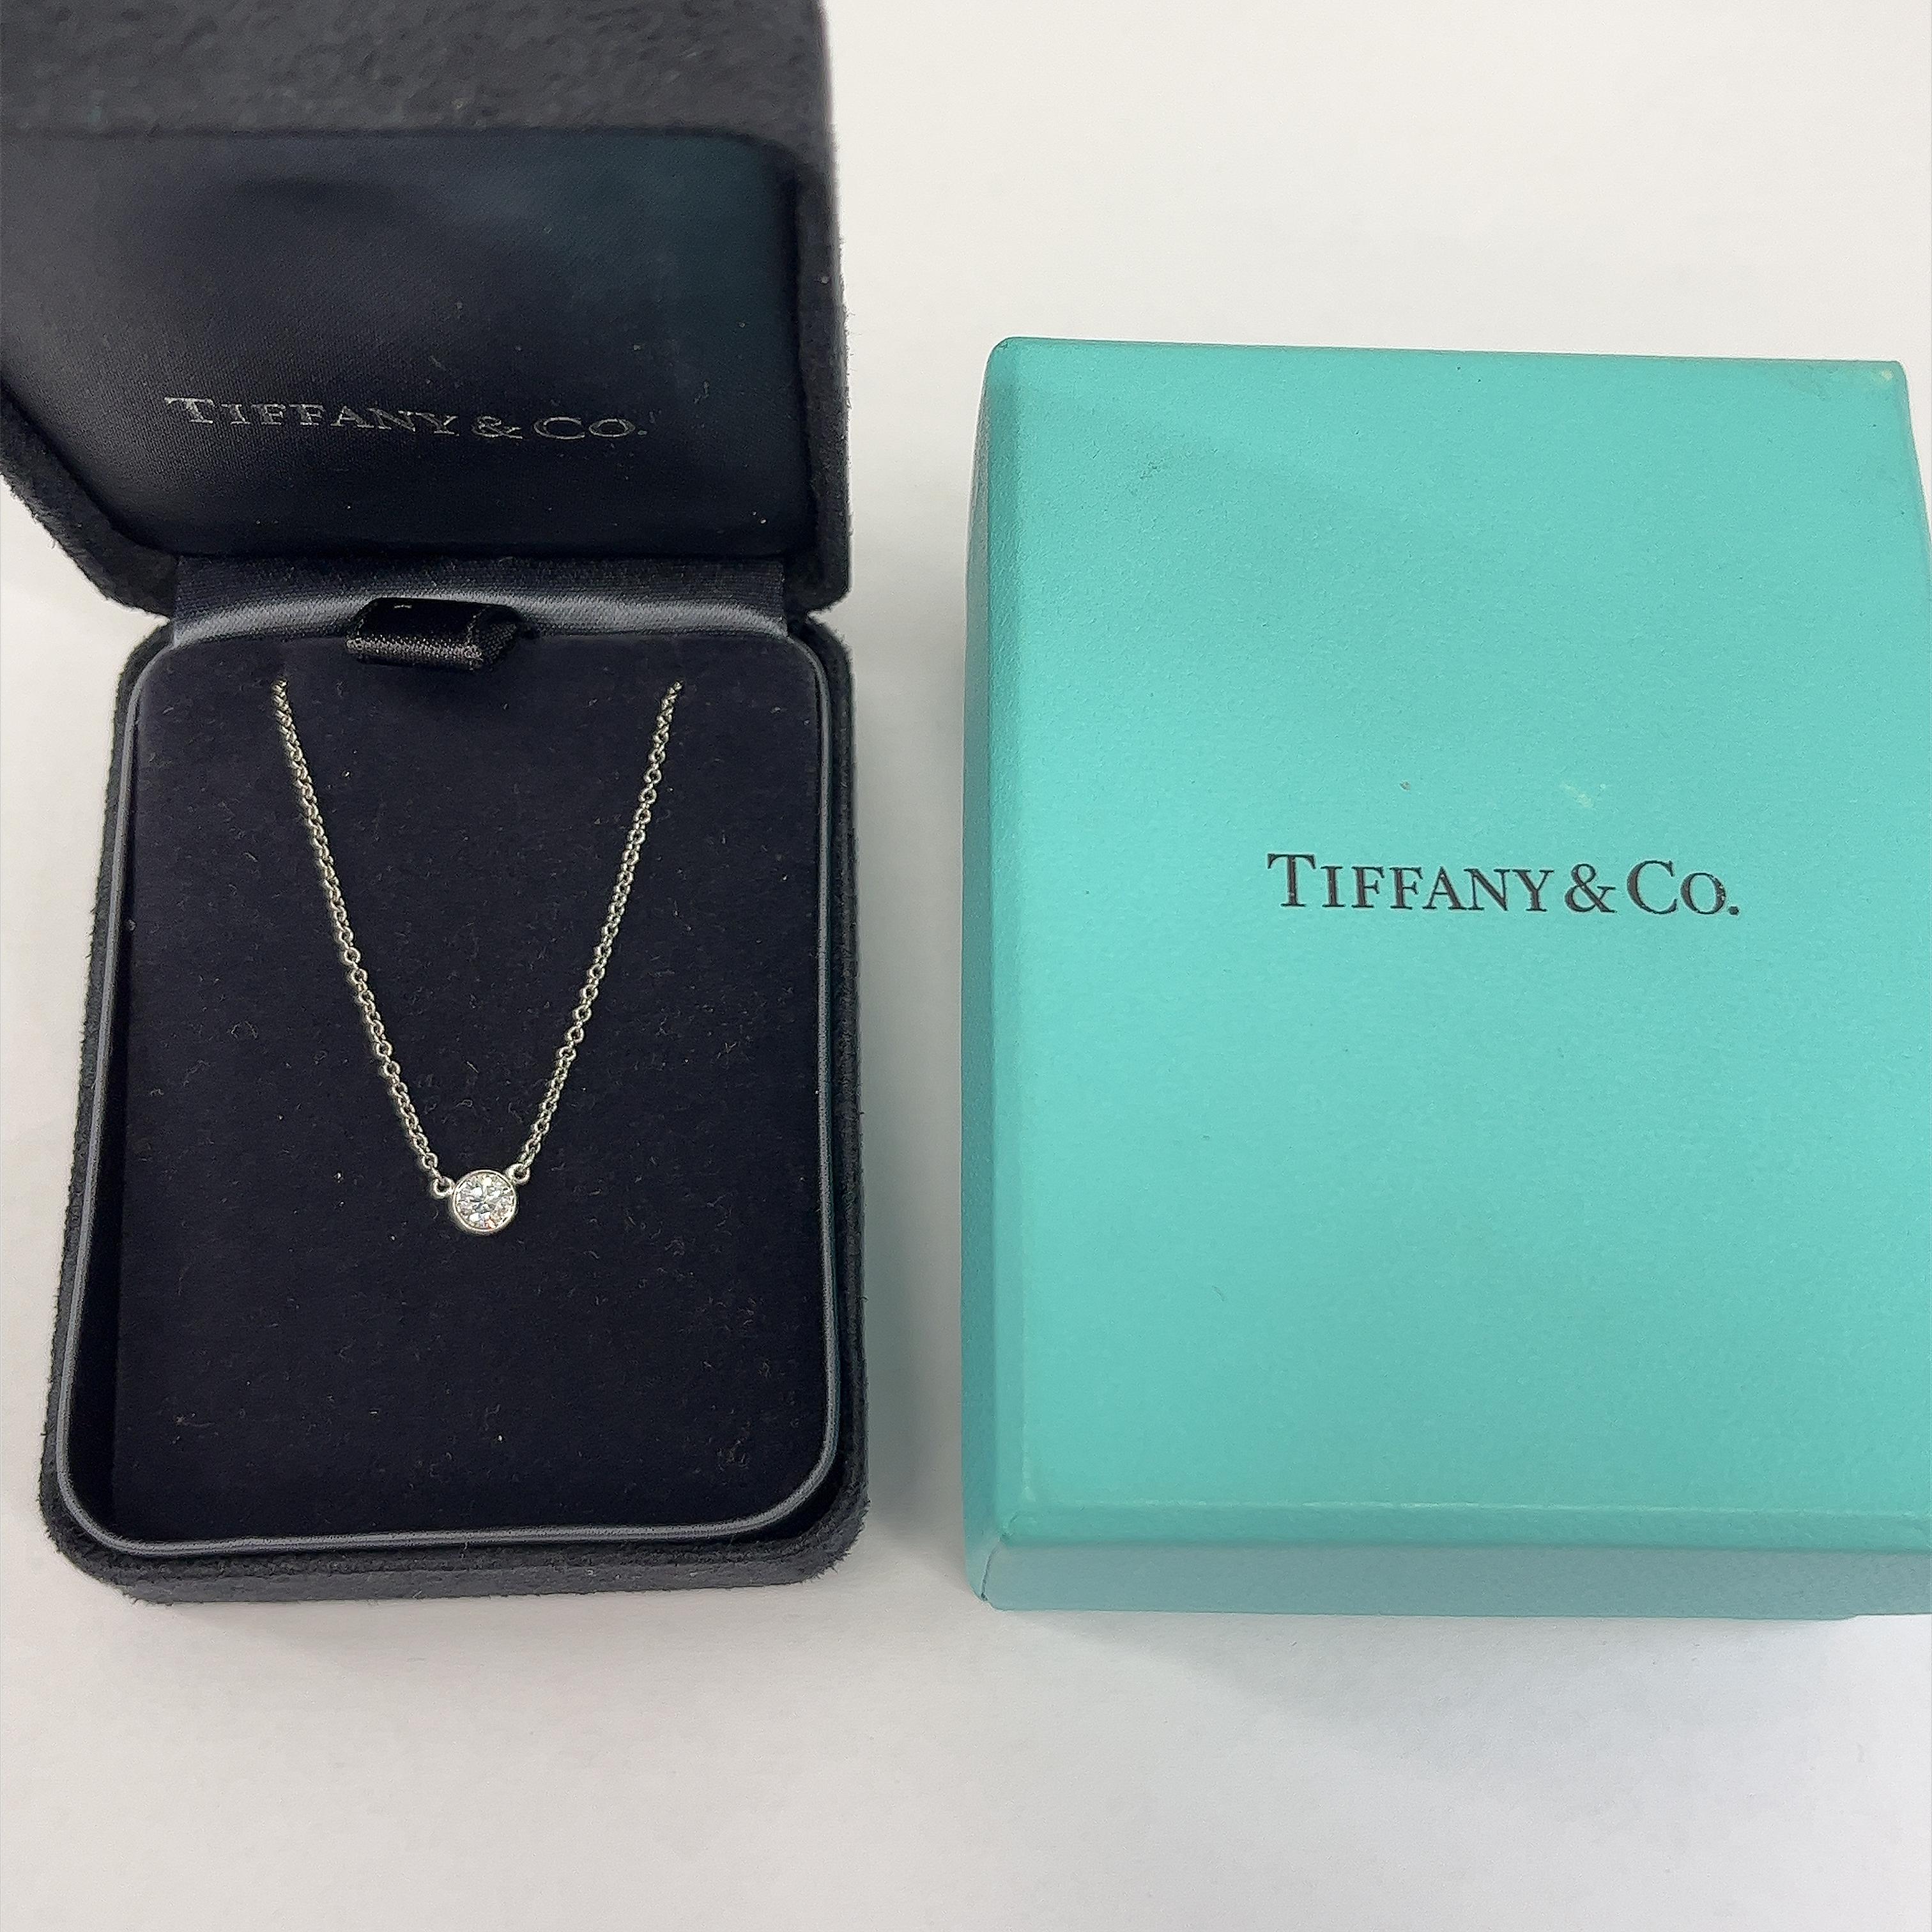 Diese Tiffany & Co Diamanten von der Yard Single Diamant
Die Halskette ist so konzipiert, dass der Anhänger in der Mitte der Brust gehalten wird,
besetzt mit 1 runden Diamanten im Brillantschliff 0,25ct G/VS1
Das macht ihn zu einem sehr eleganten